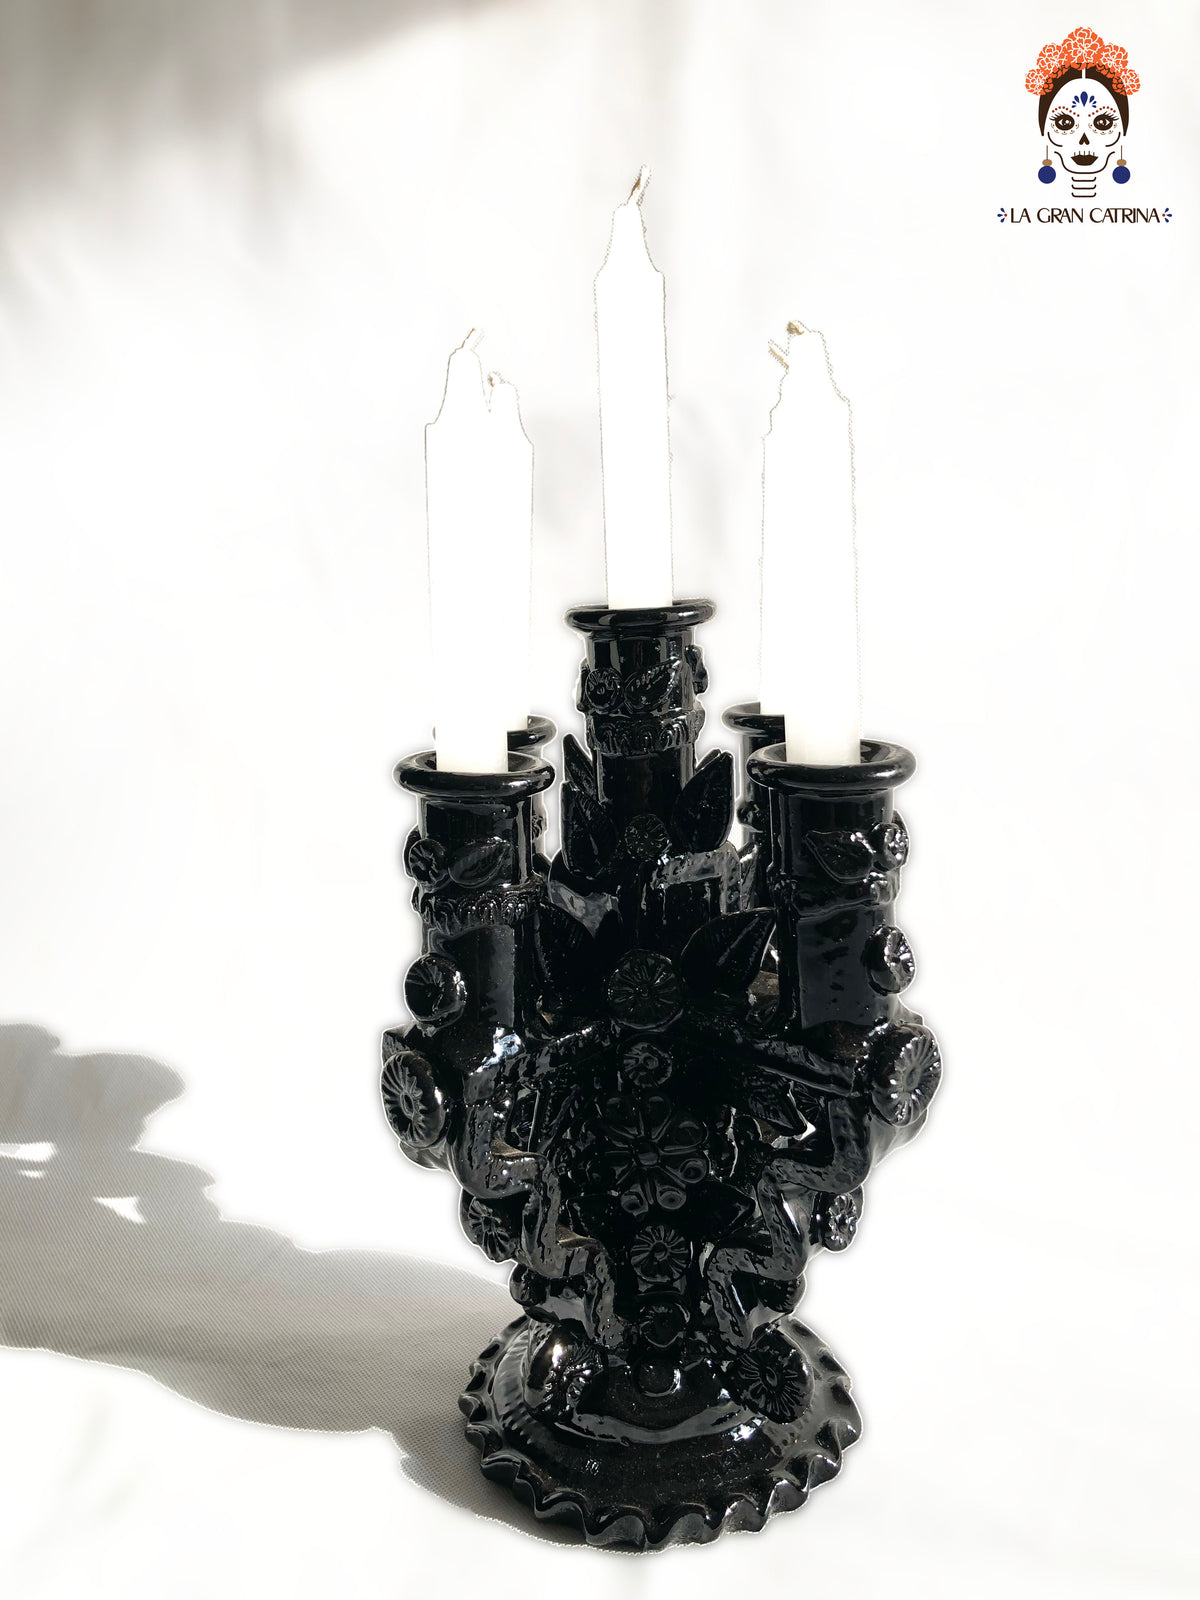 Candelero negro de 5 velas - Barro vidriado - 28 cm. 11 in.